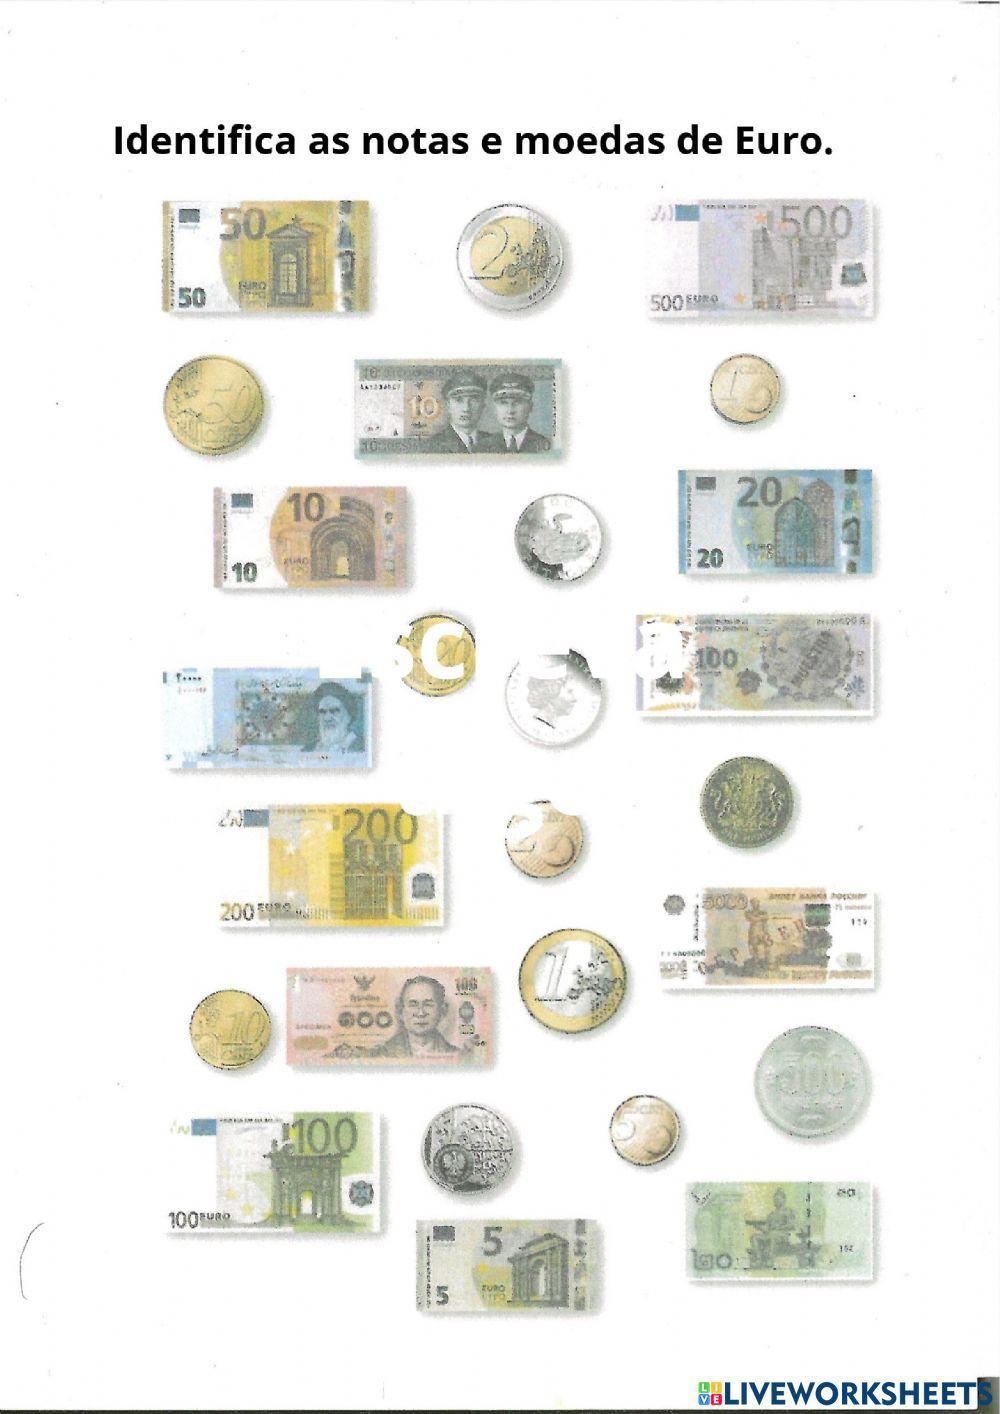 Descobre as moedas e notas de €